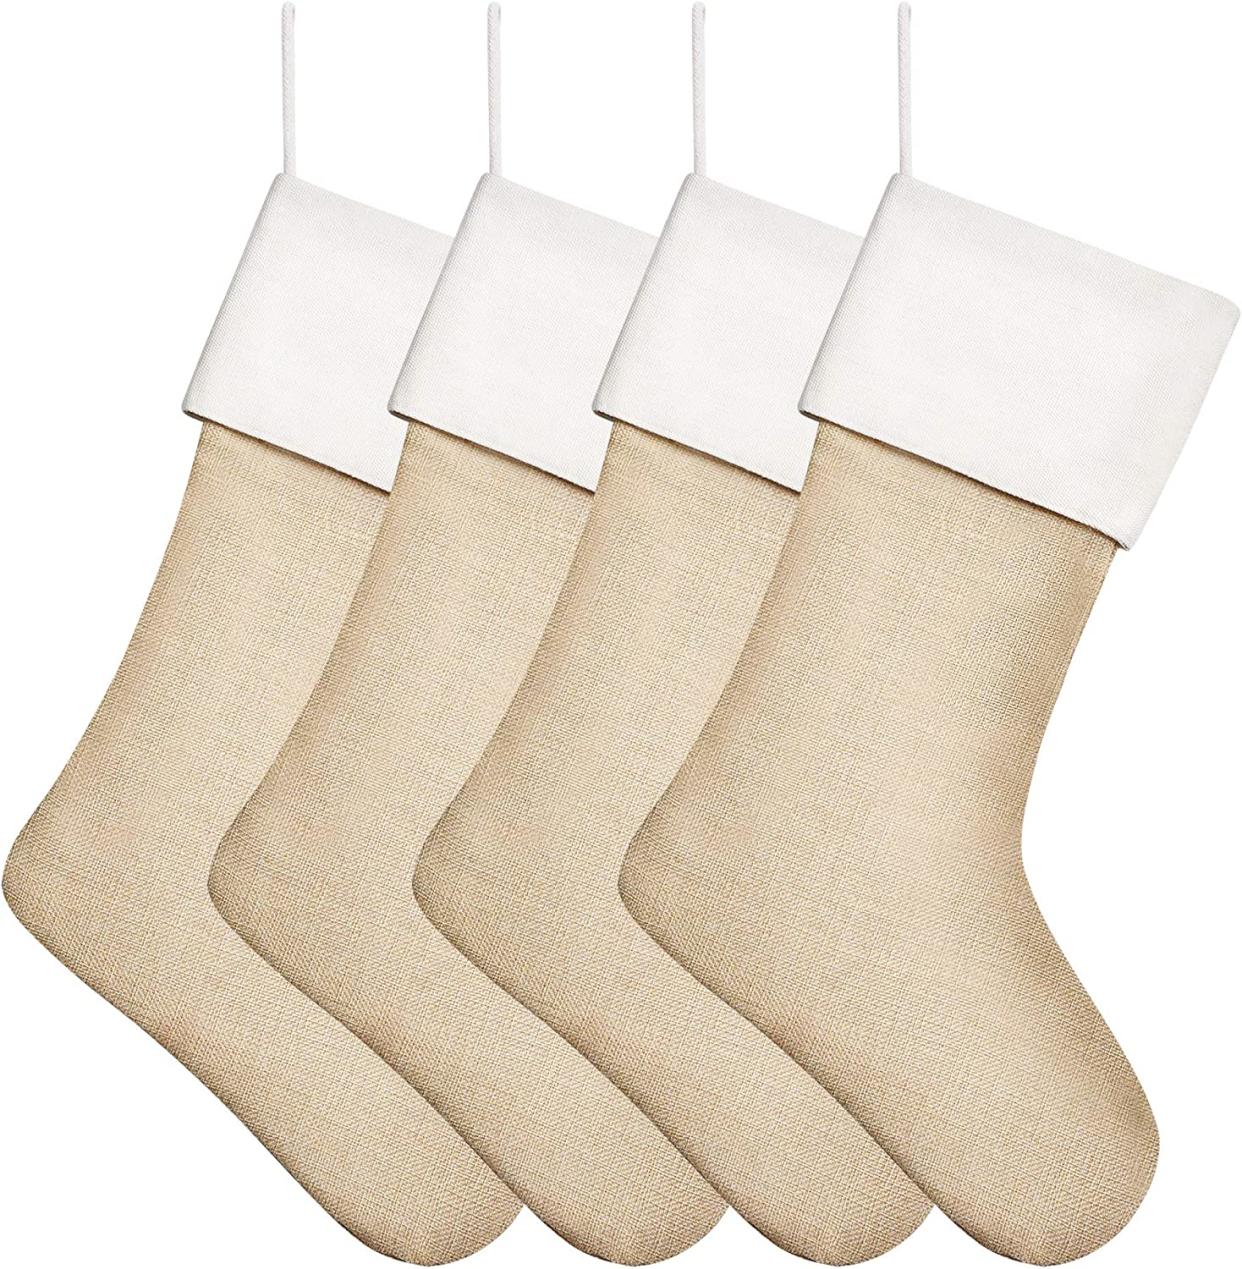 Kunyida Burlap Christmas Stockings, Set of 4 